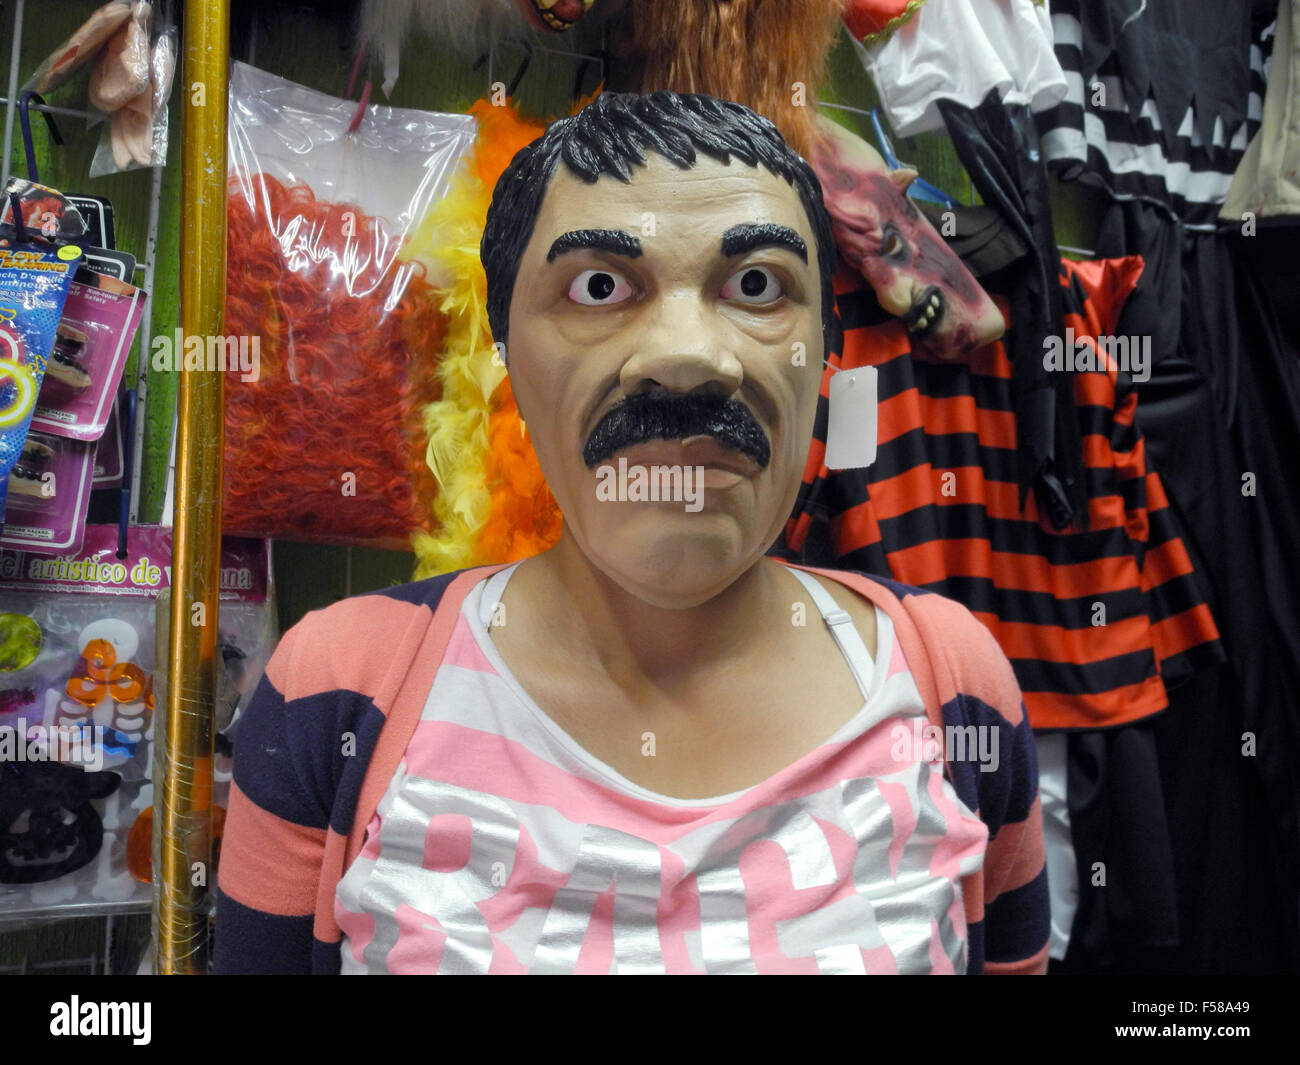 La ville de Mexico, Mexique. 27 Oct, 2015. Le masque du pivot de la drogue mexicain Joaquin "El Chapo" Guzman dans un marché à Mexico, Mexique, 27 octobre 2015. Le baron de la drogue en fuite de cette année aux côtés de vampires, zombies, sorcières et à l'Halloween parties. Les masques du cartel mustachioed chef sont le best-seller dans les marchés de la ville de Mexico. Photo : CARMEN PENA/dpa/Alamy Live News Banque D'Images